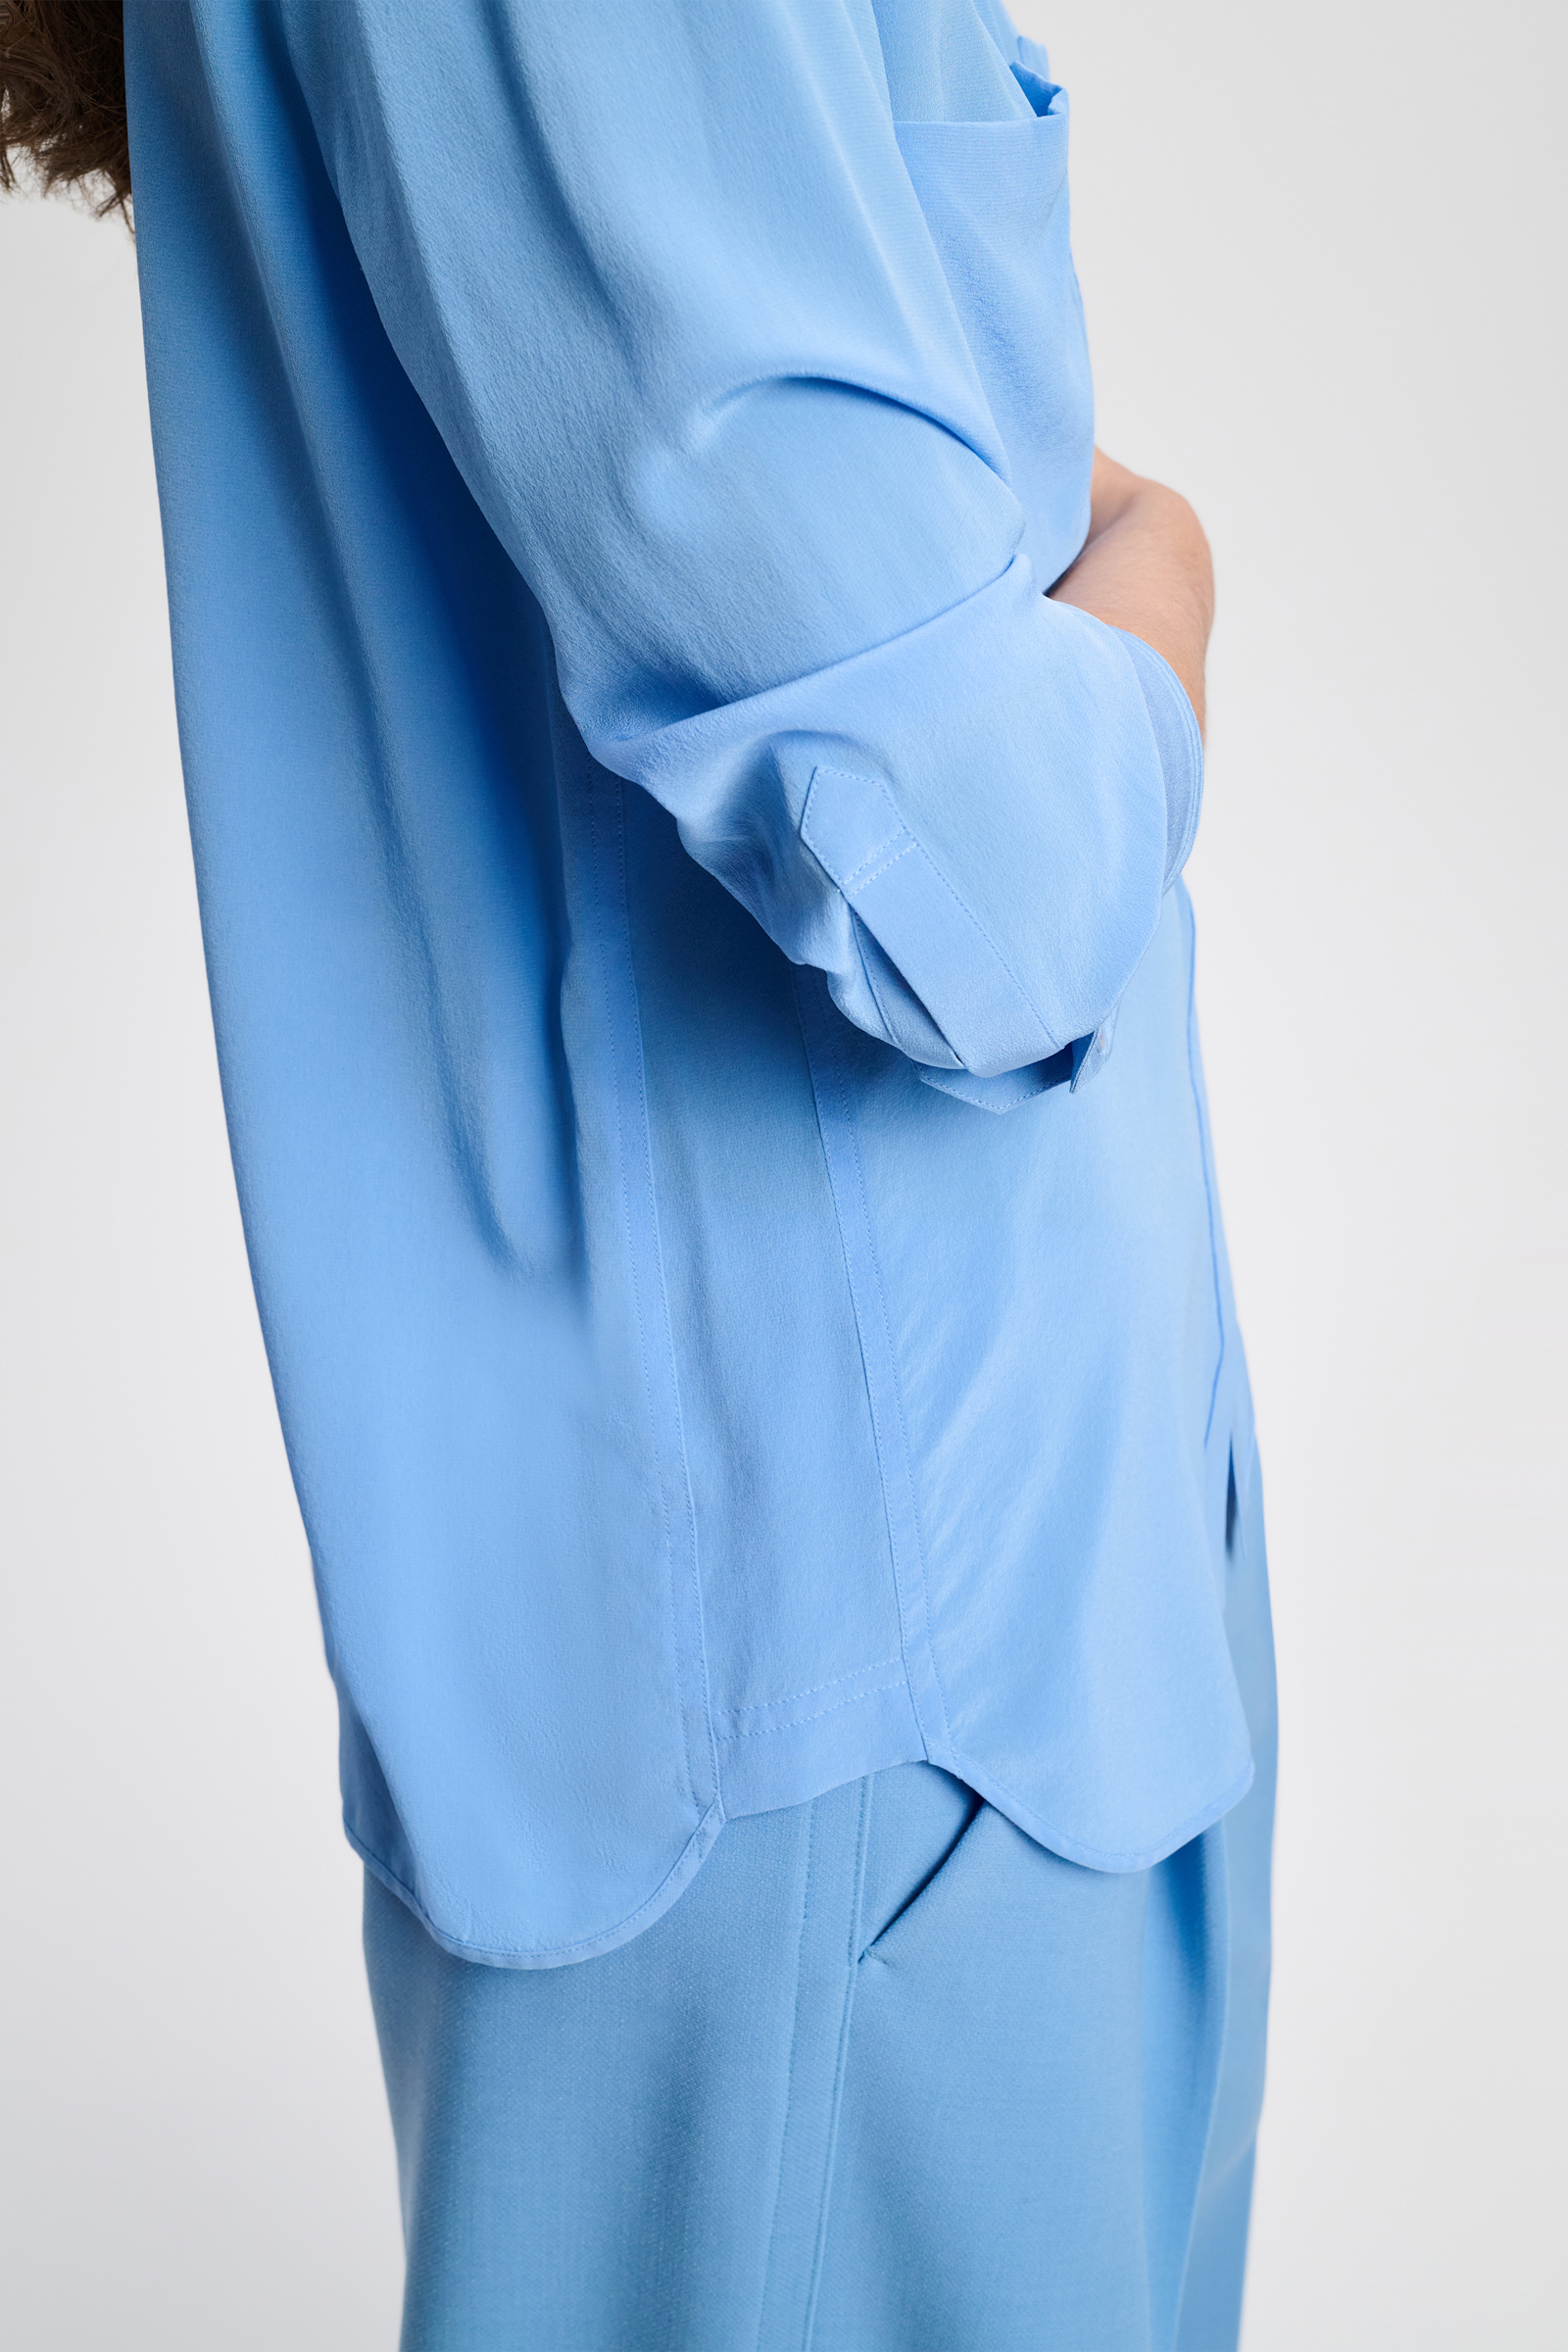 Dorothee Schumacher Silk blouse with pockets cornflower blue